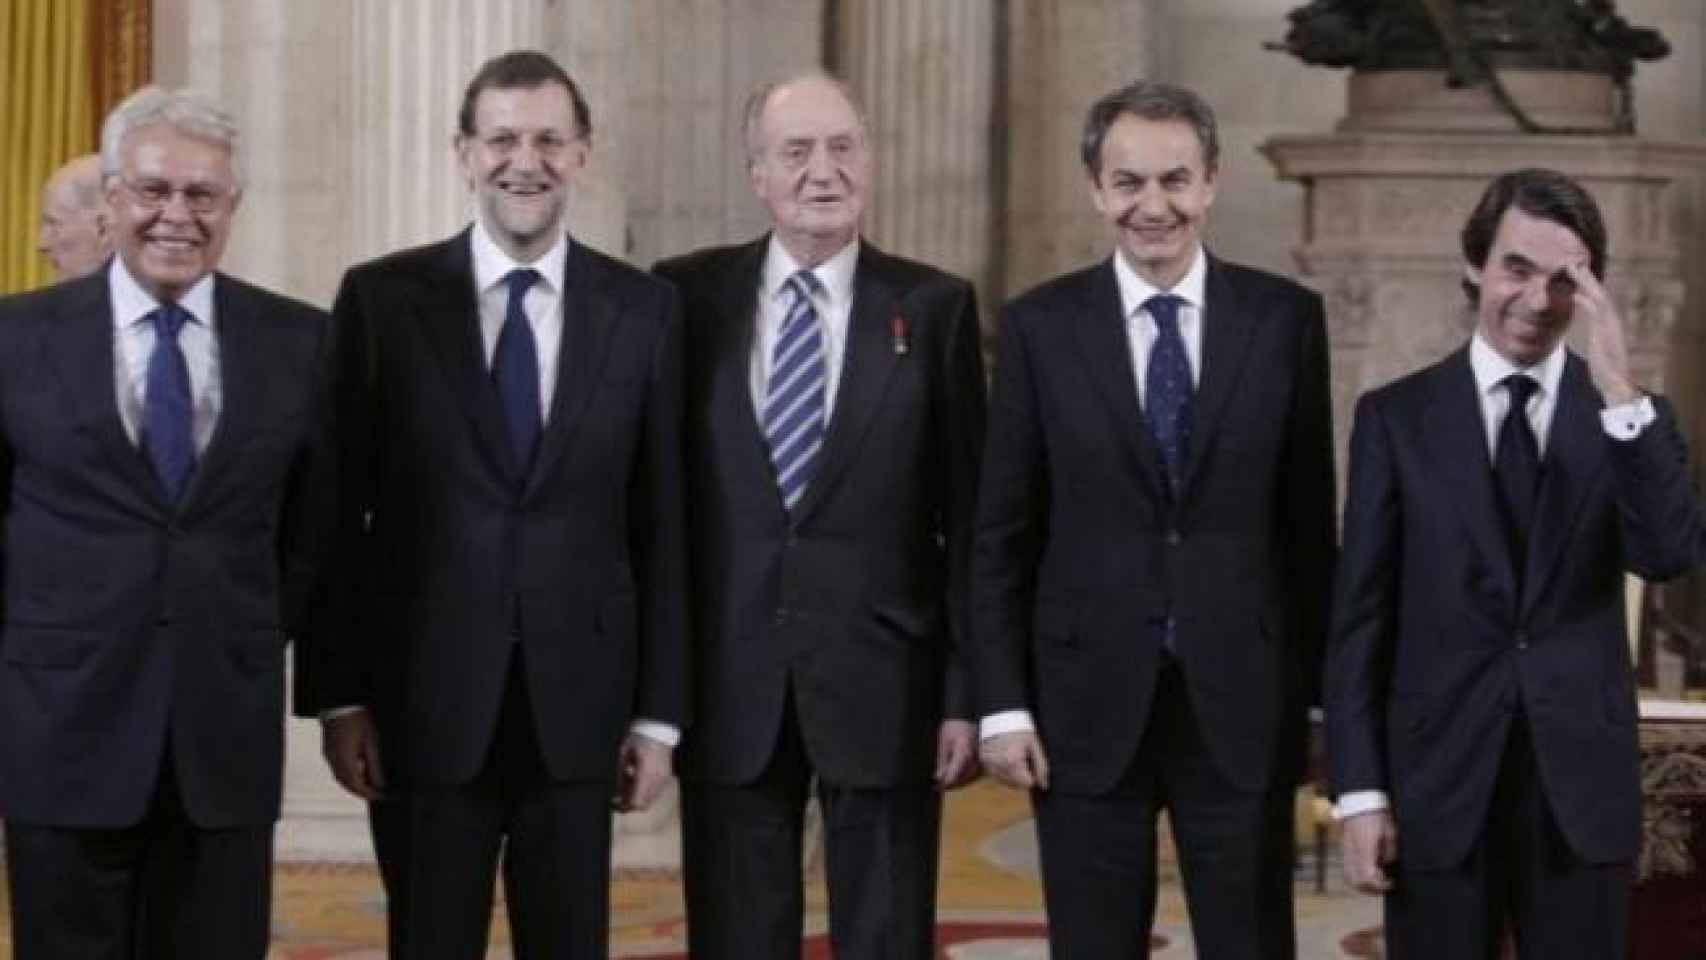 El rey Juan Carlos I, entre los presidentes Felipe González, Mariano Rajoy, José Luis Rodríguez Zapatero y José María Aznar.